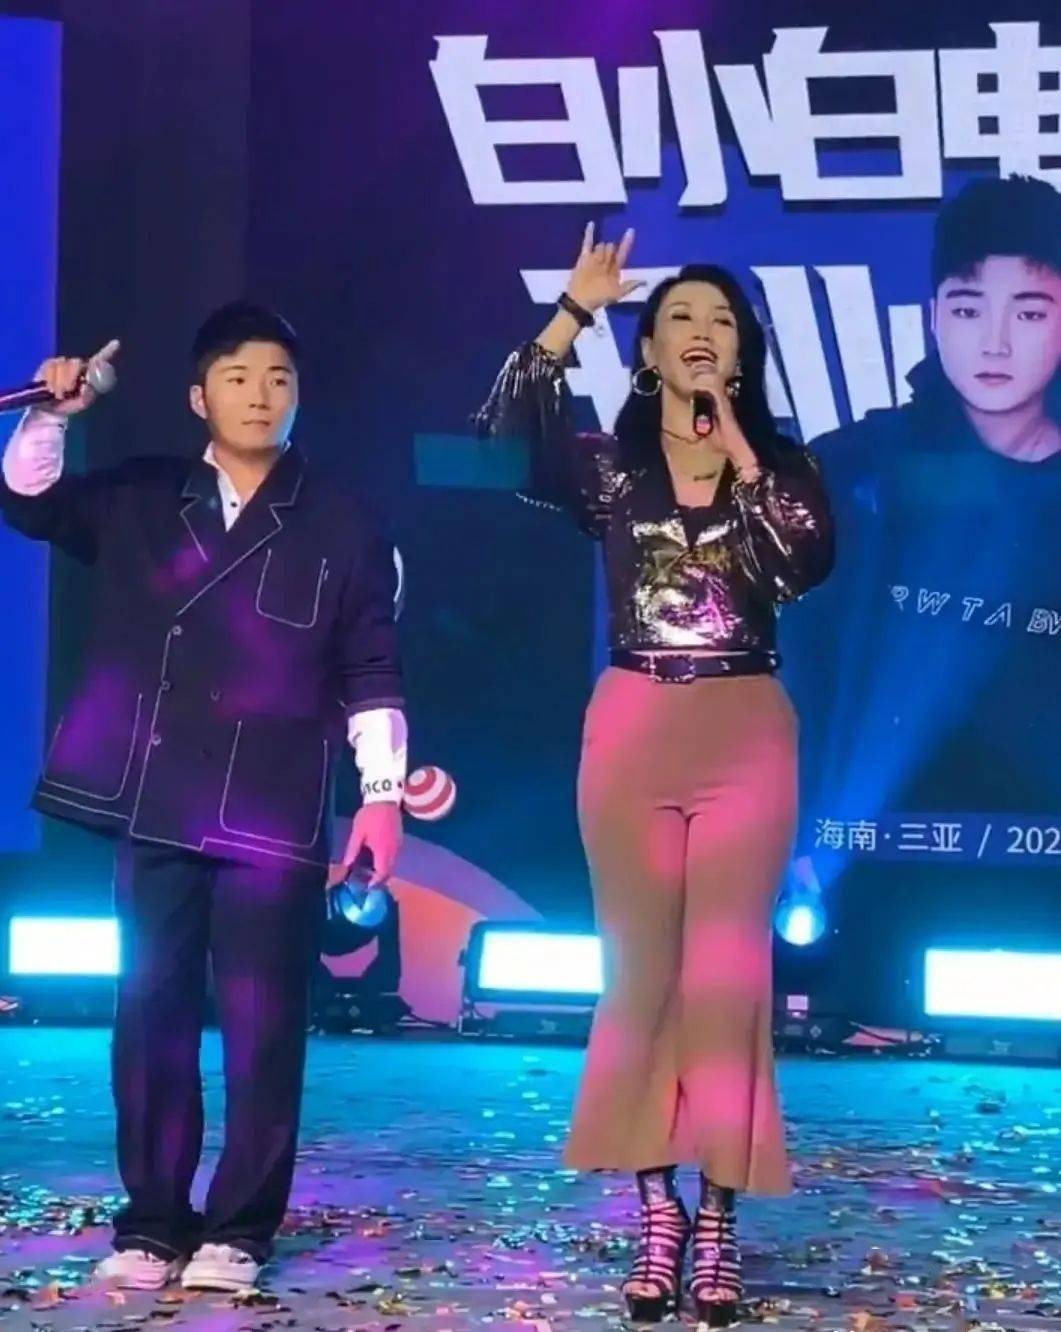 歌手王蓉签约网红公司,商演舞台简陋穿着寒酸,42岁混成这惨样!